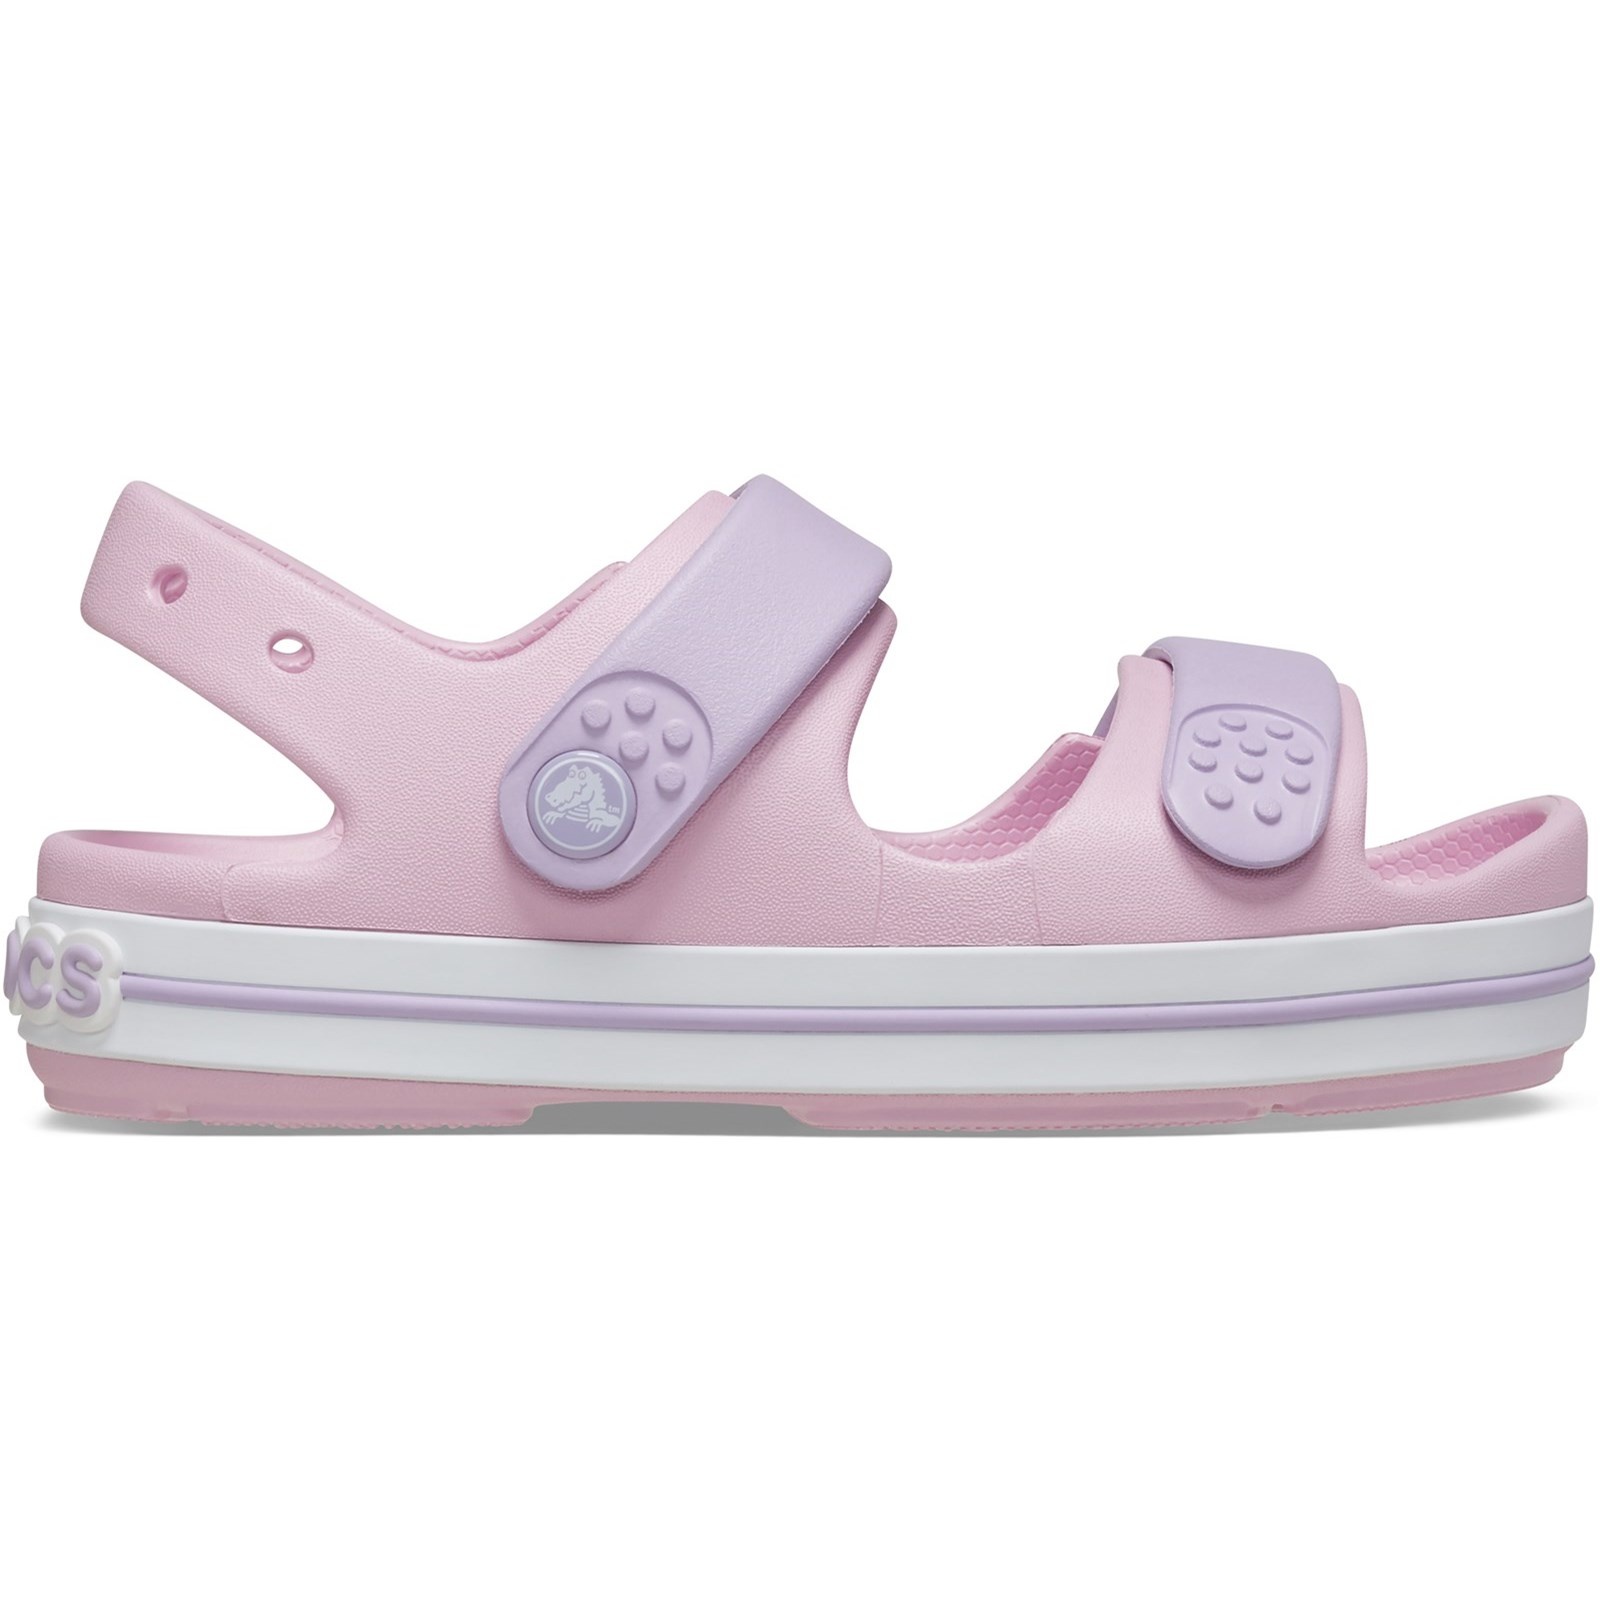 Crocs Cruiser Sandal Pink/Lavender Infant